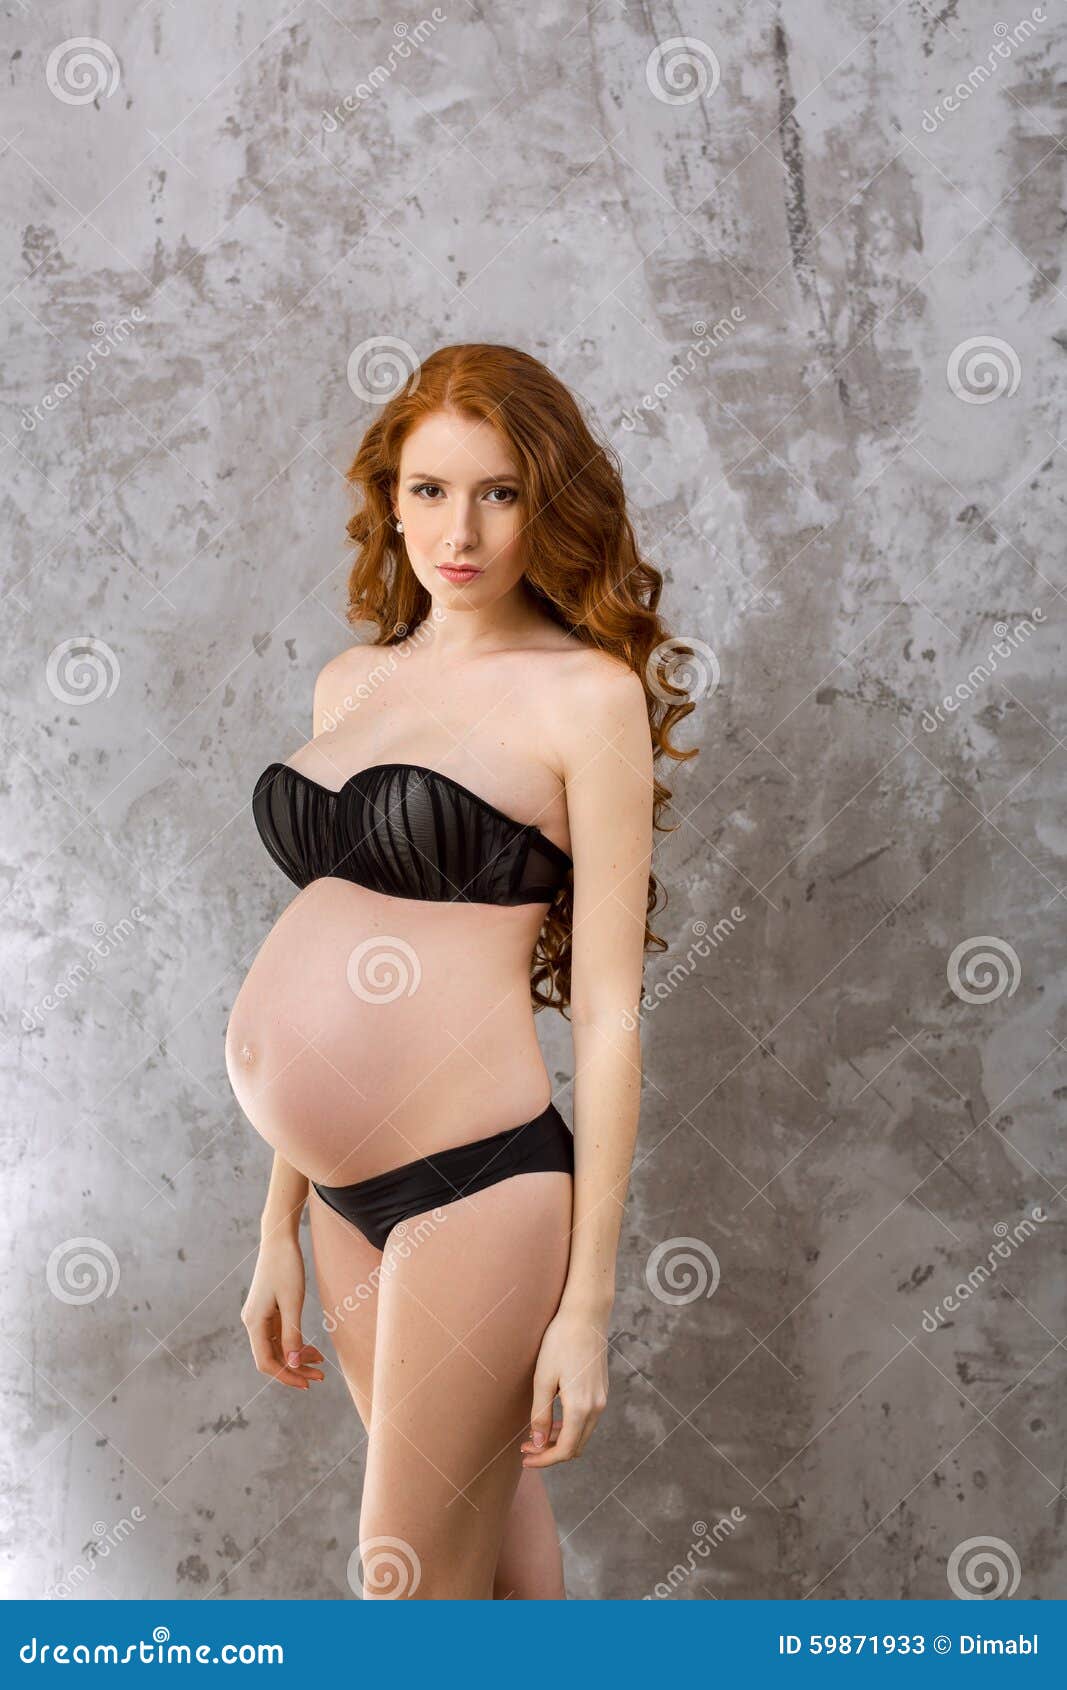 Hot Pregnant Pics 2